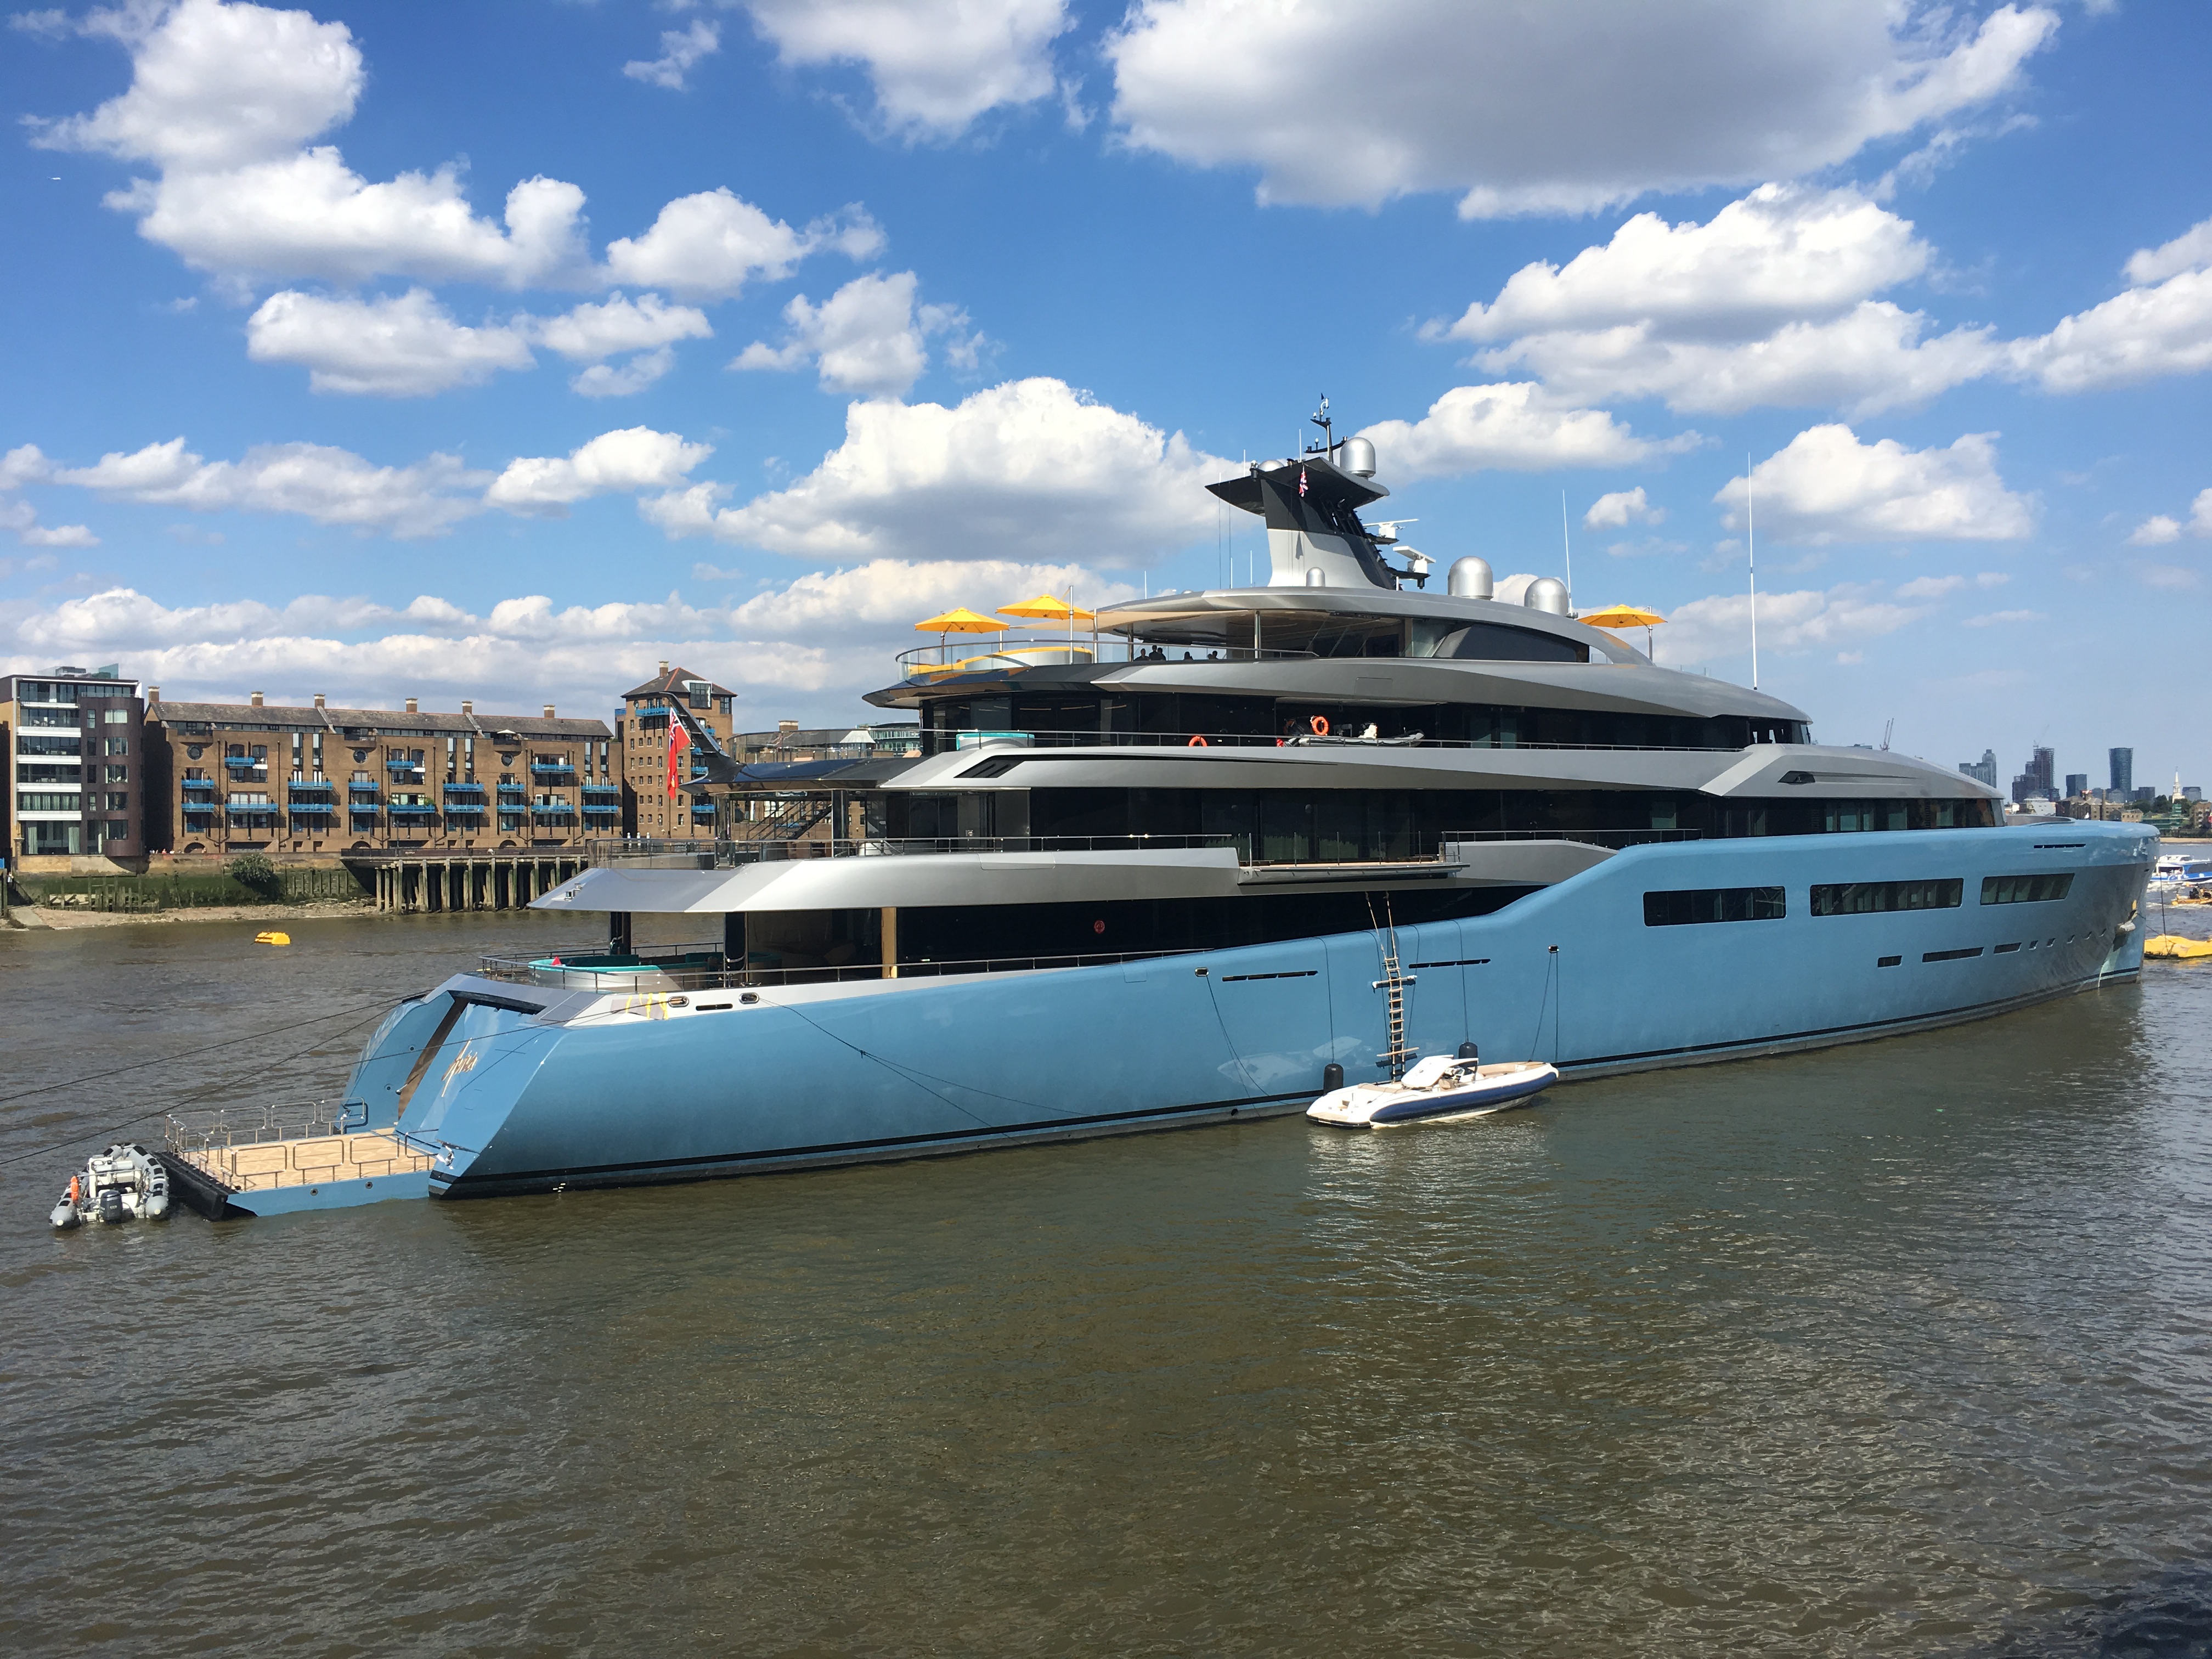 luxury yacht aviva